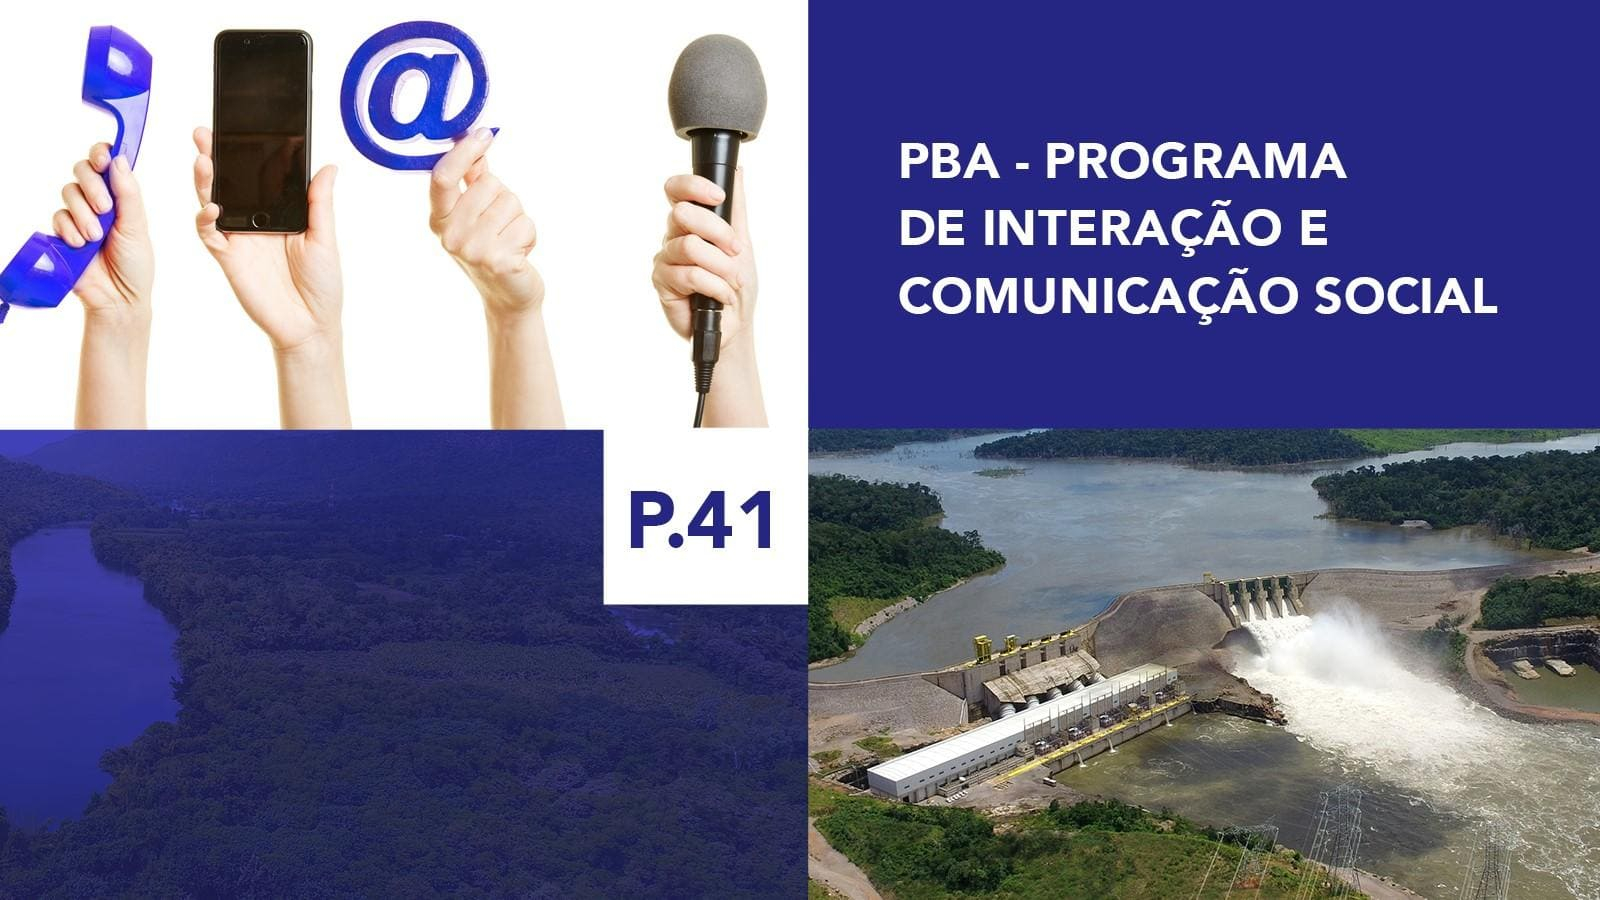 P.41 - Programa de Interação e Comunicação Social